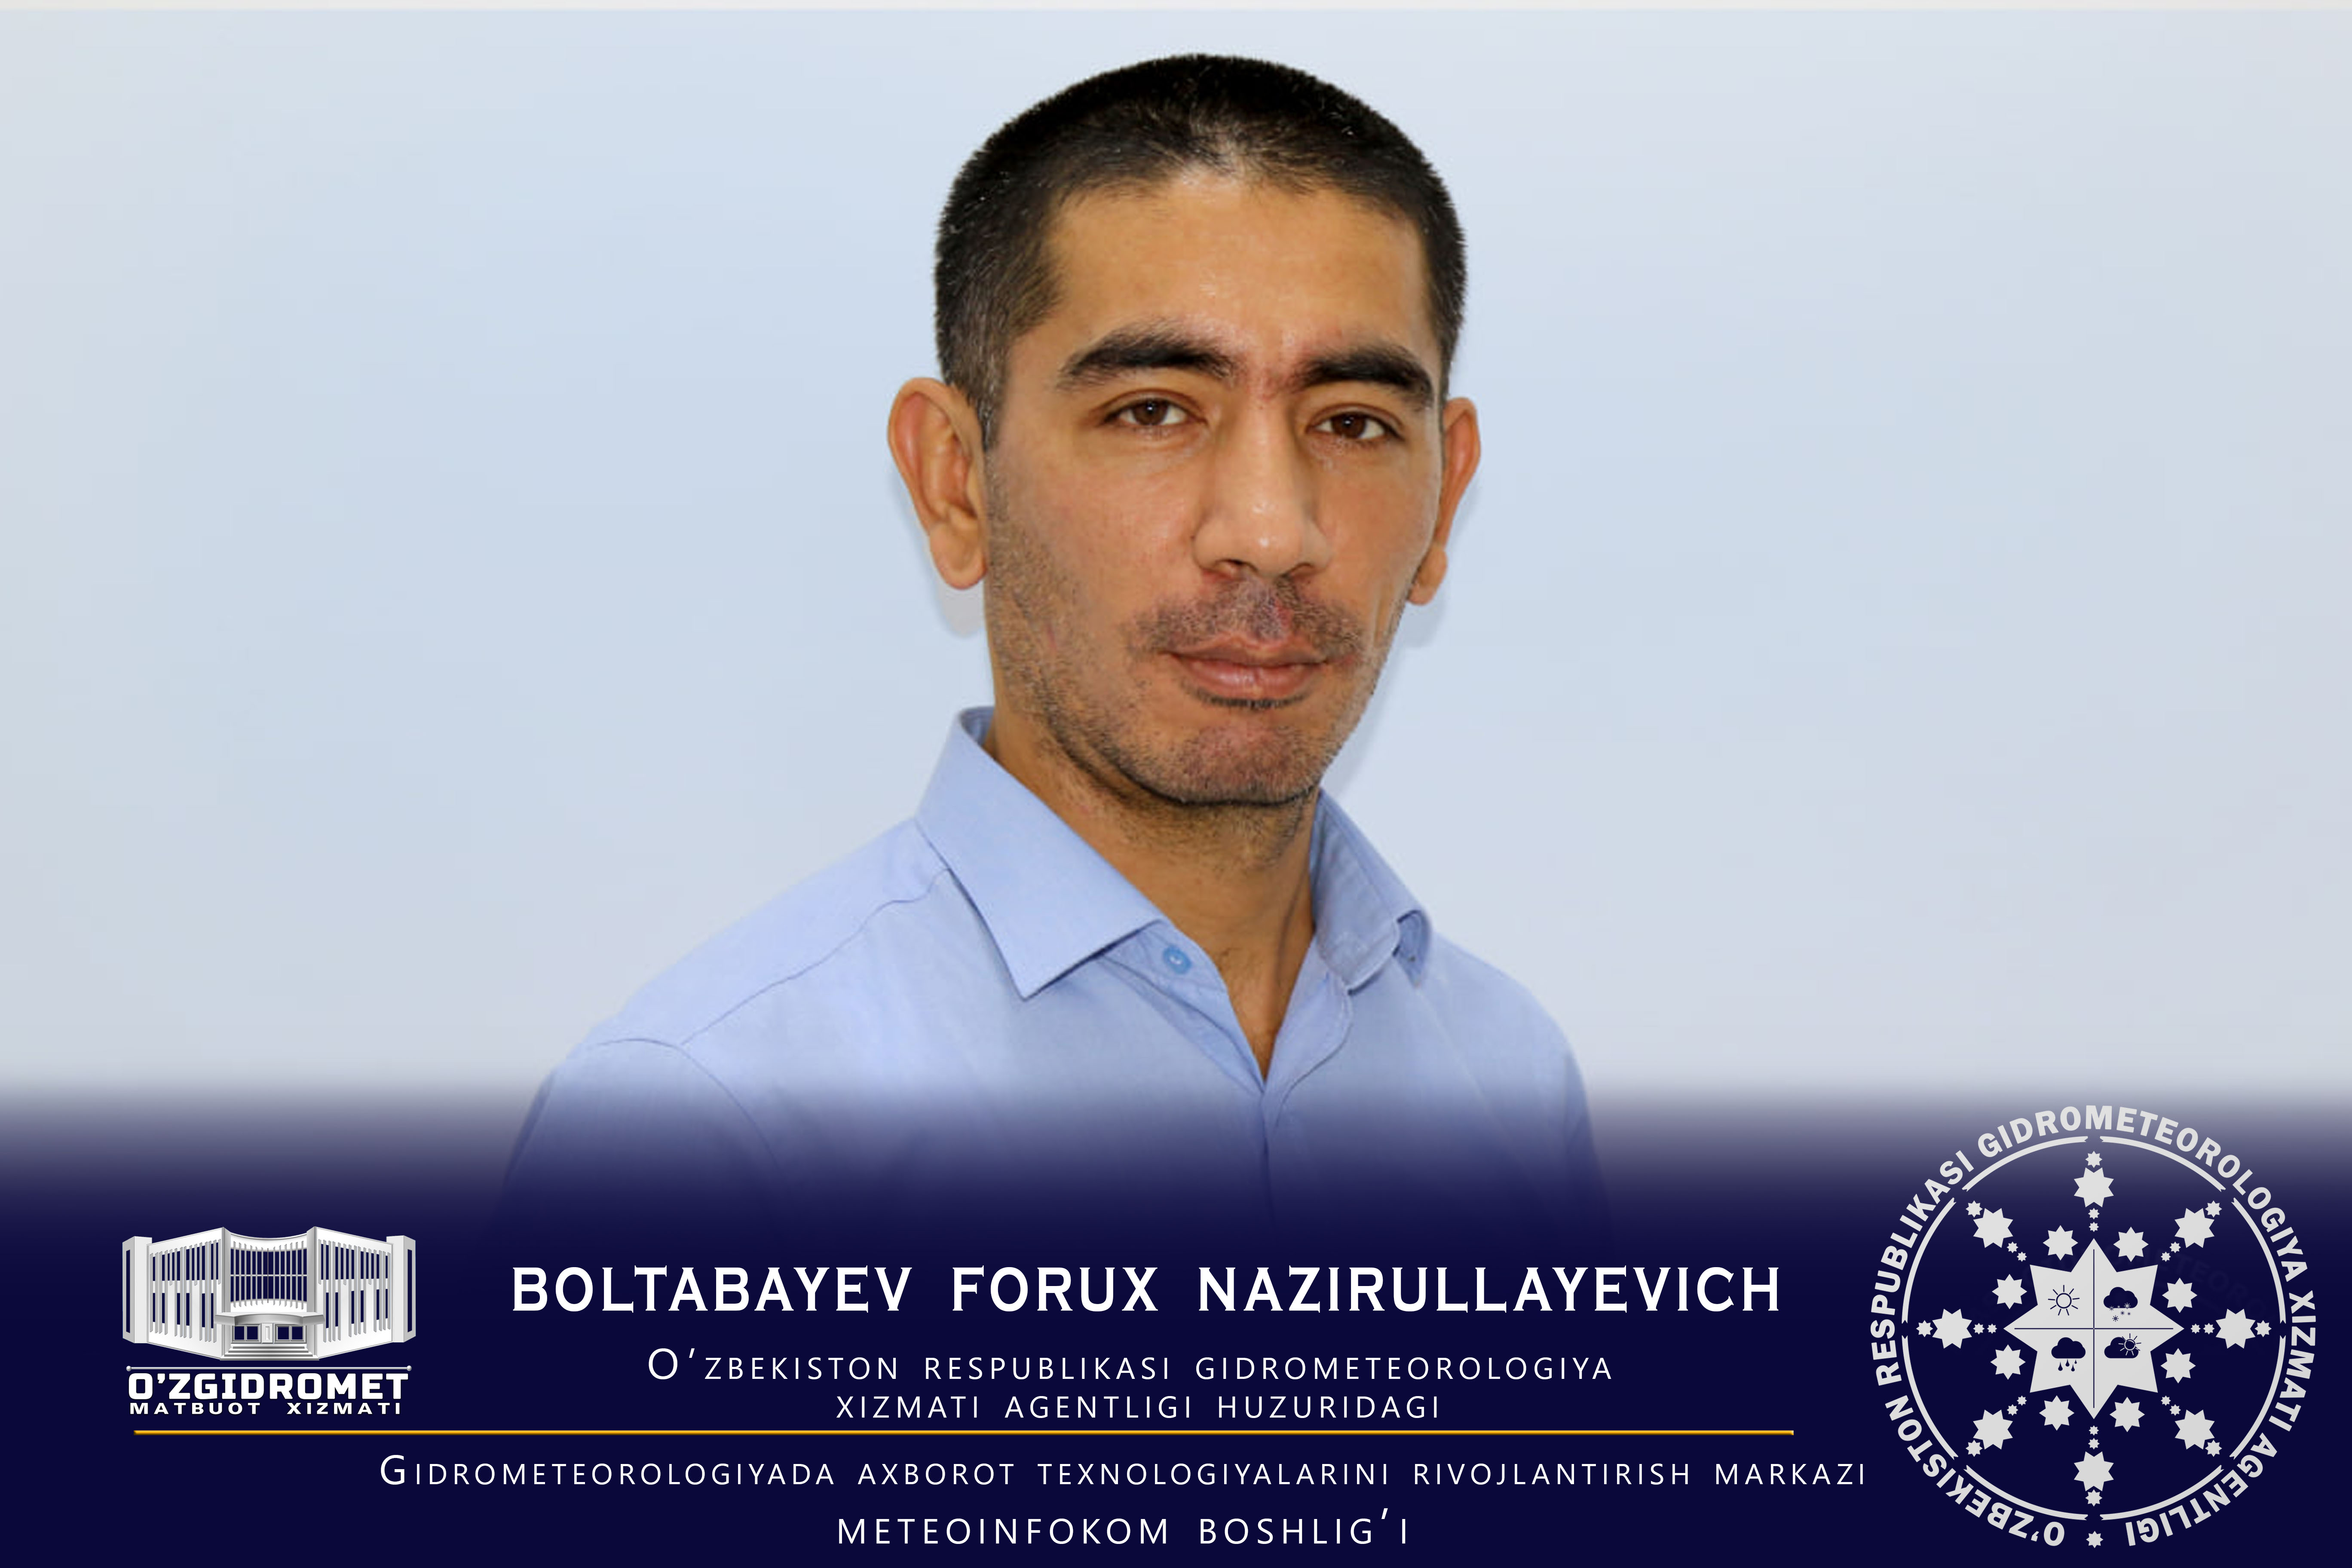 Boltabayev Forux Nazirullayevich 